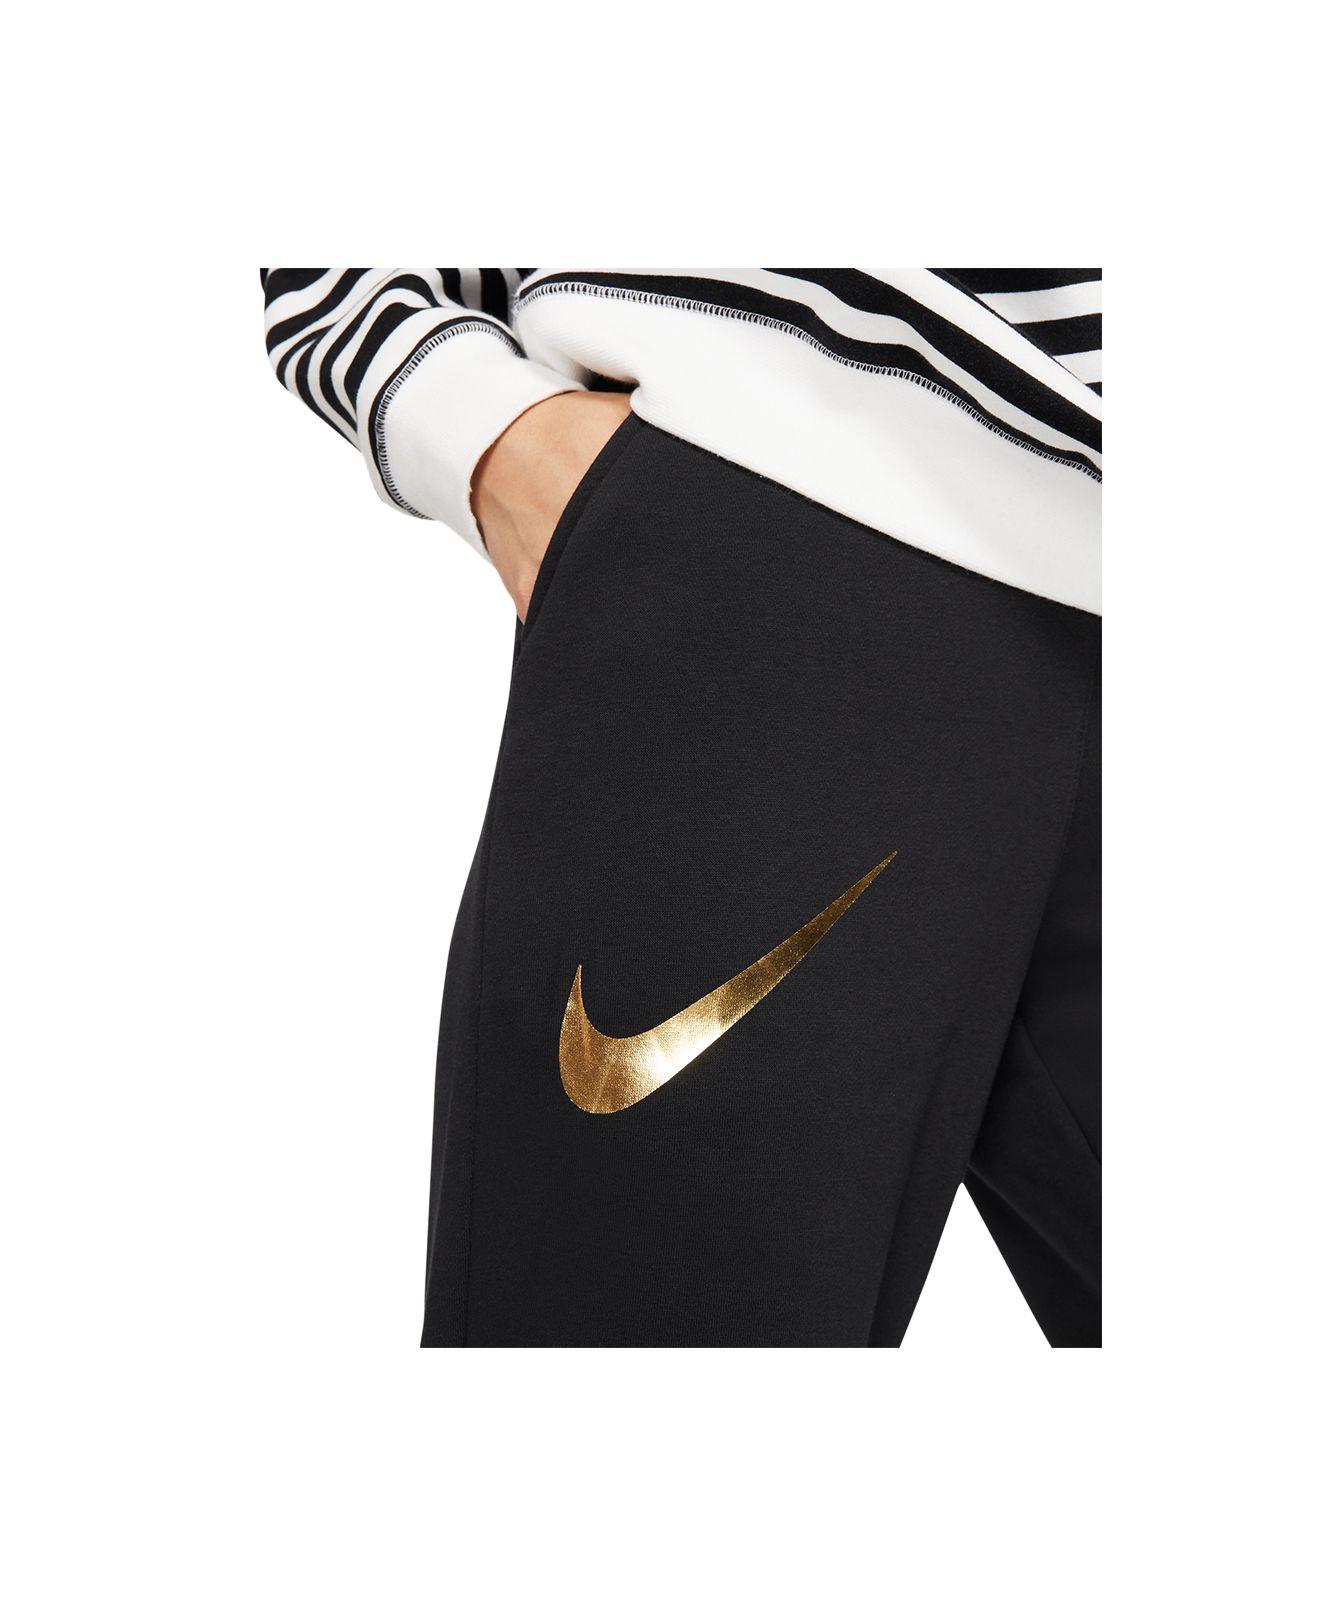 Nike Fleece Sportswear Shine Metallic Logo Sweatpants in Black/Gold (Black)  - Lyst